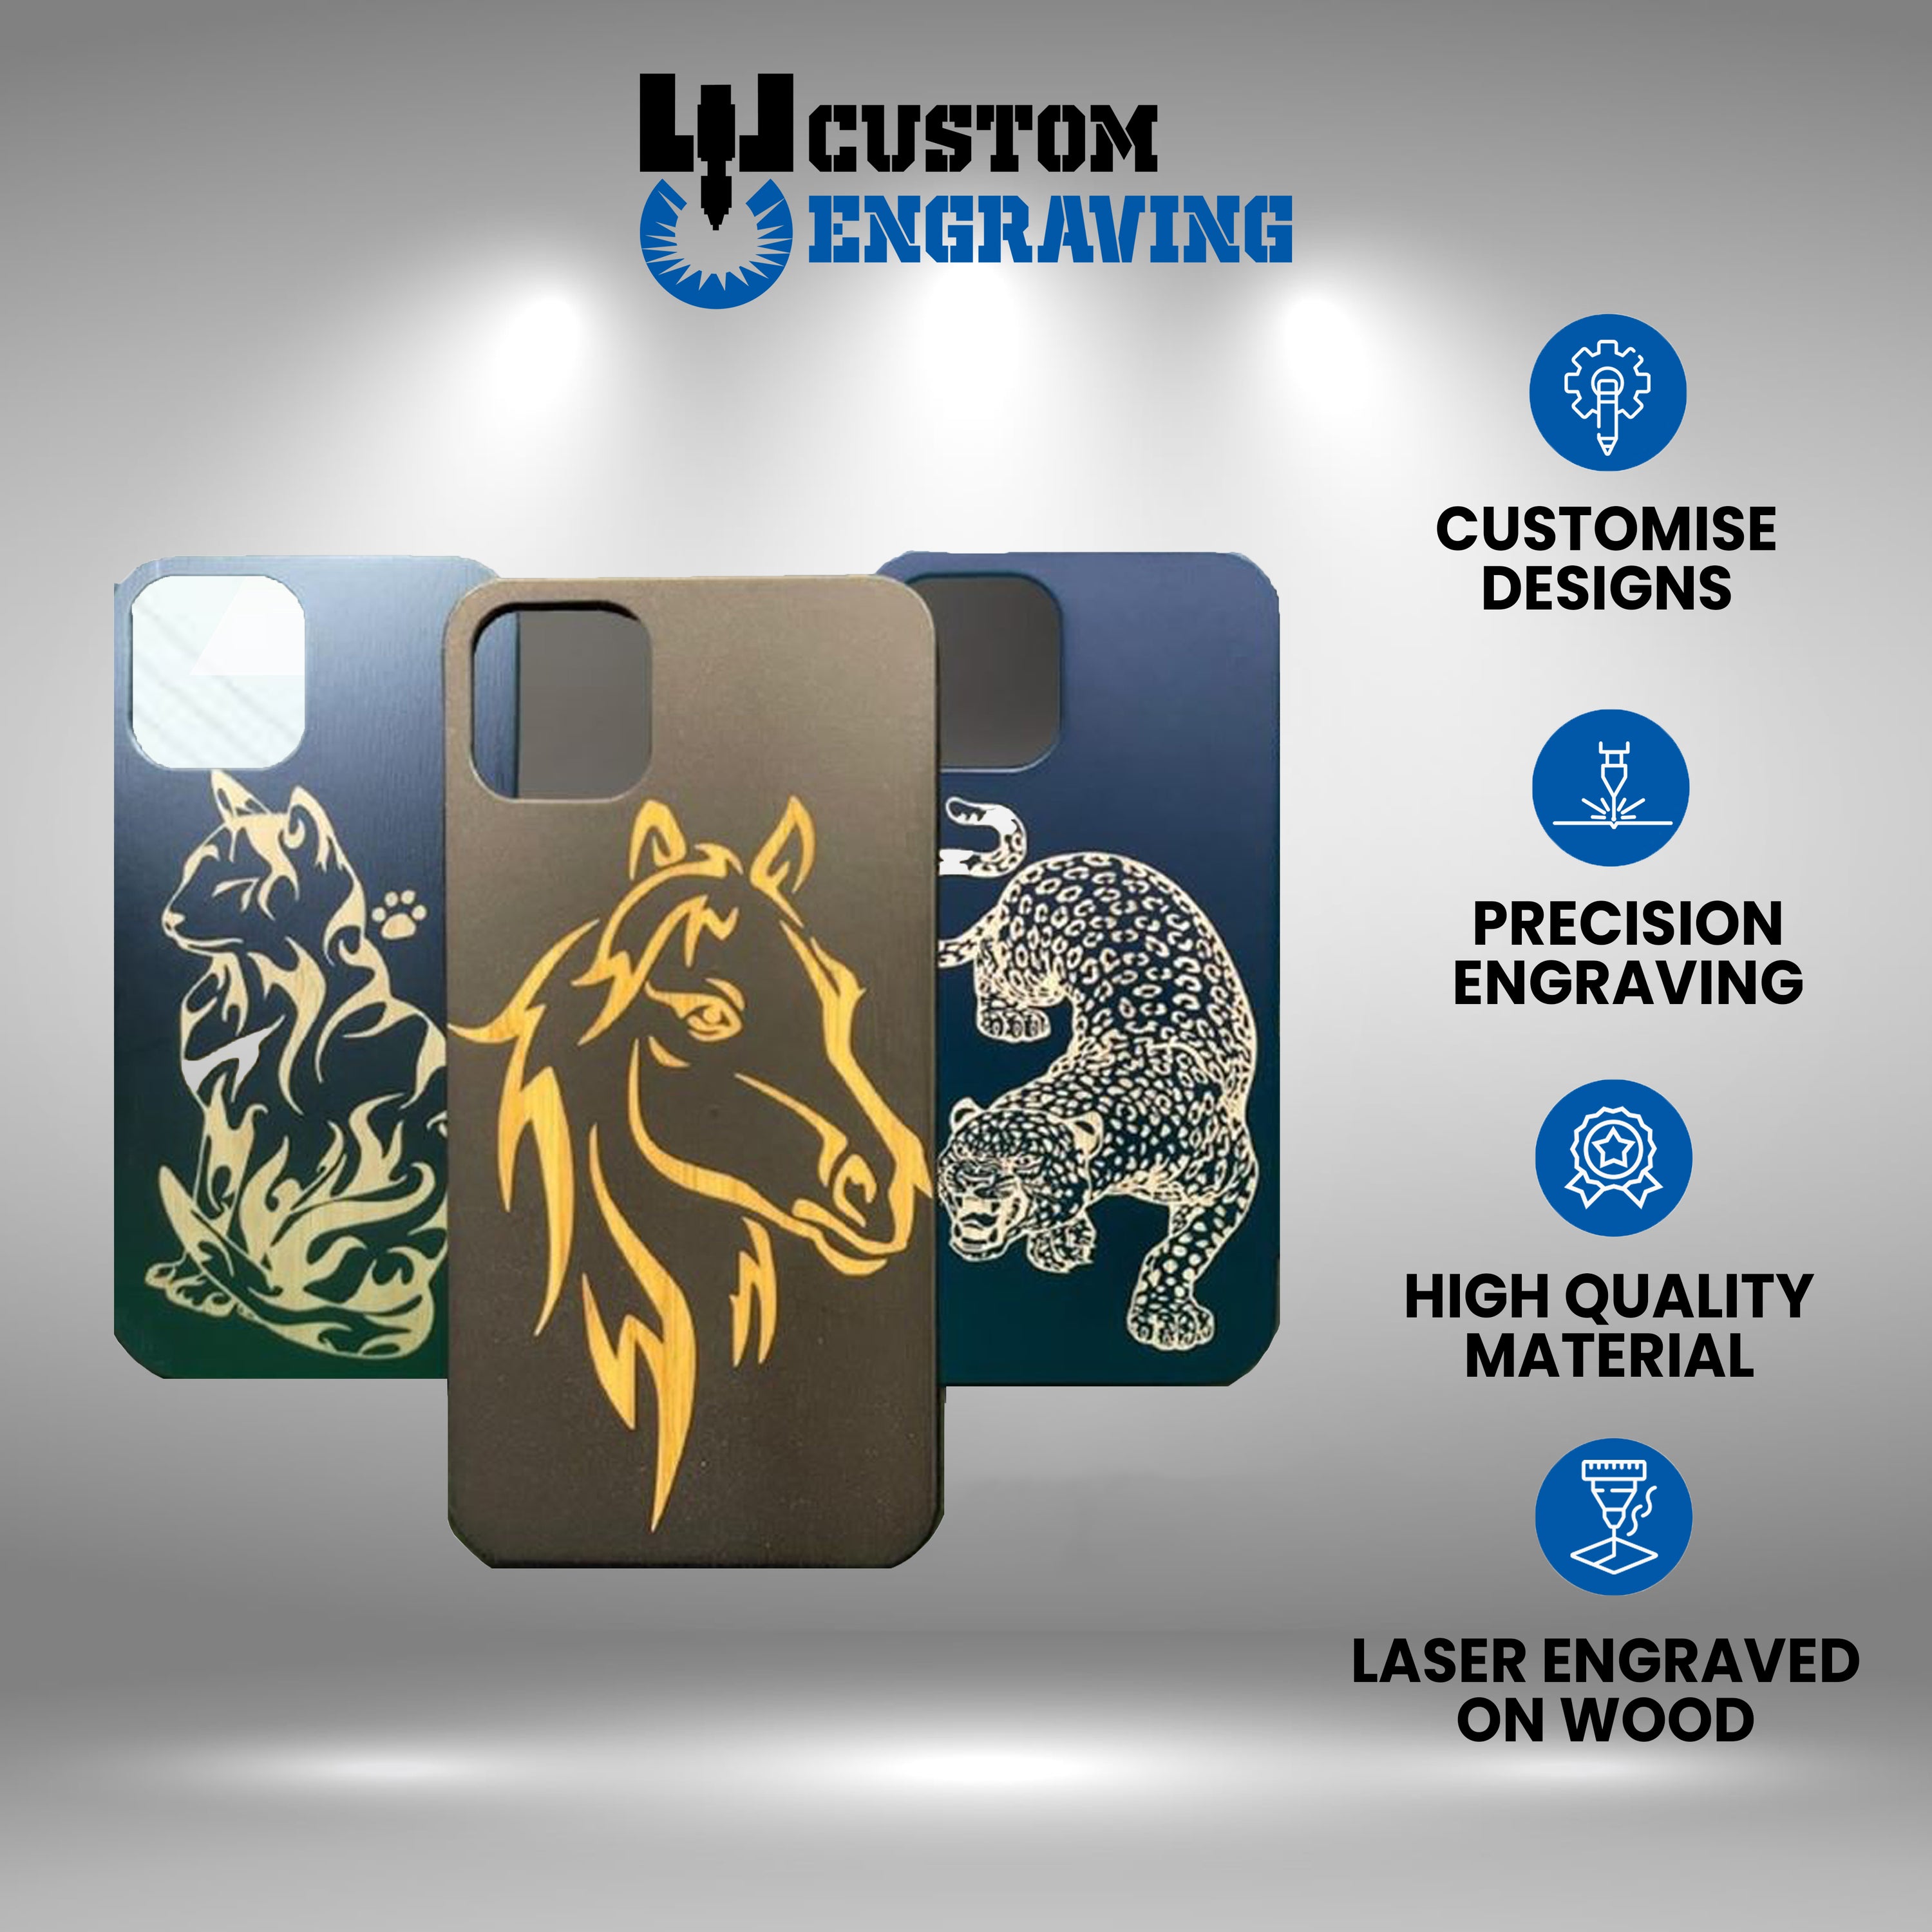 Custom iPhone cases